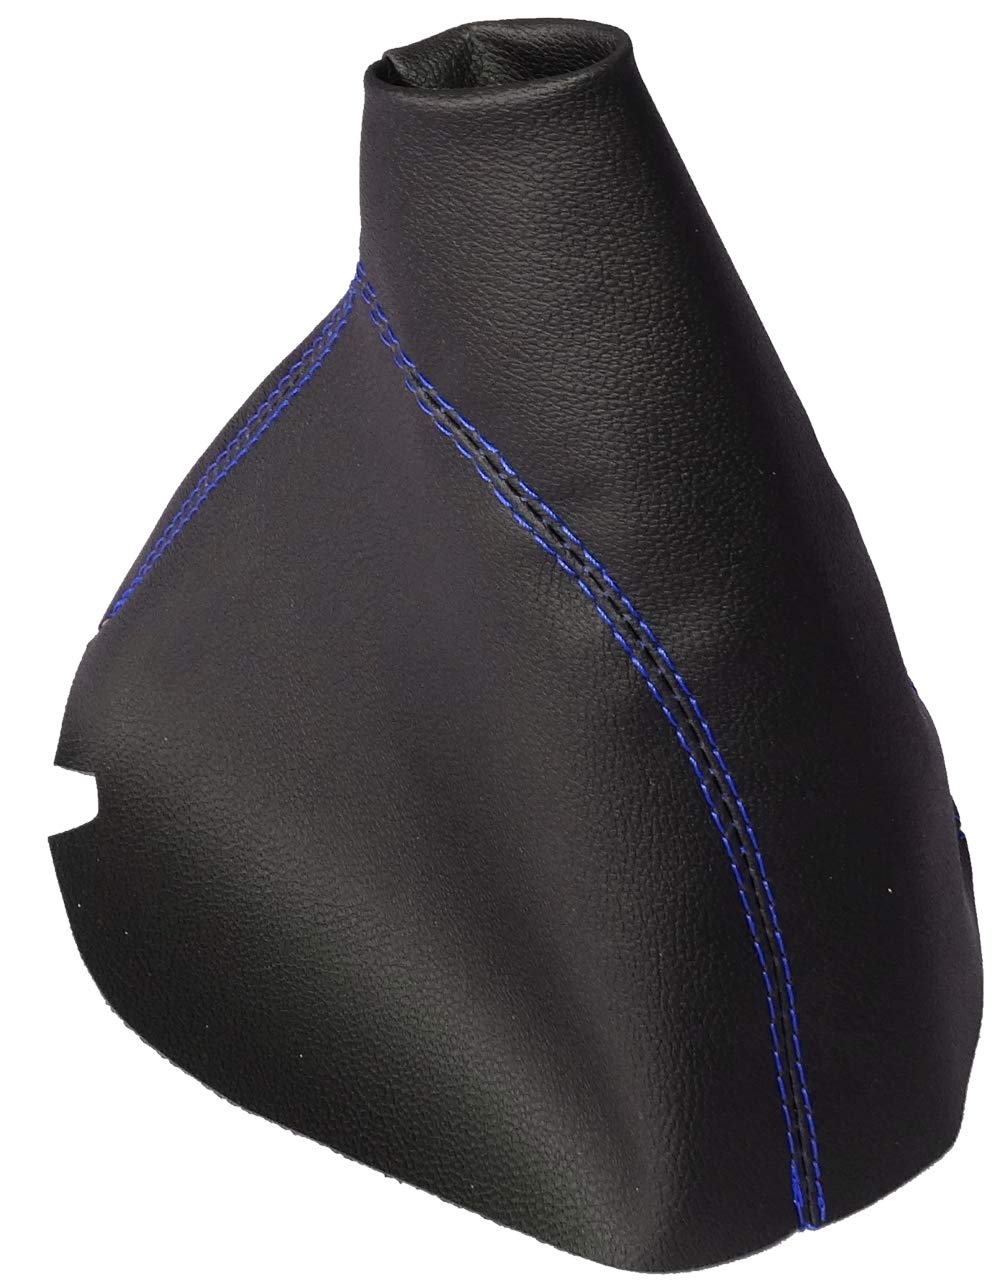 AERZETIX: Schaltsack schaltmanschette kunstleder schwarz mit blauen nähten von AERZETIX